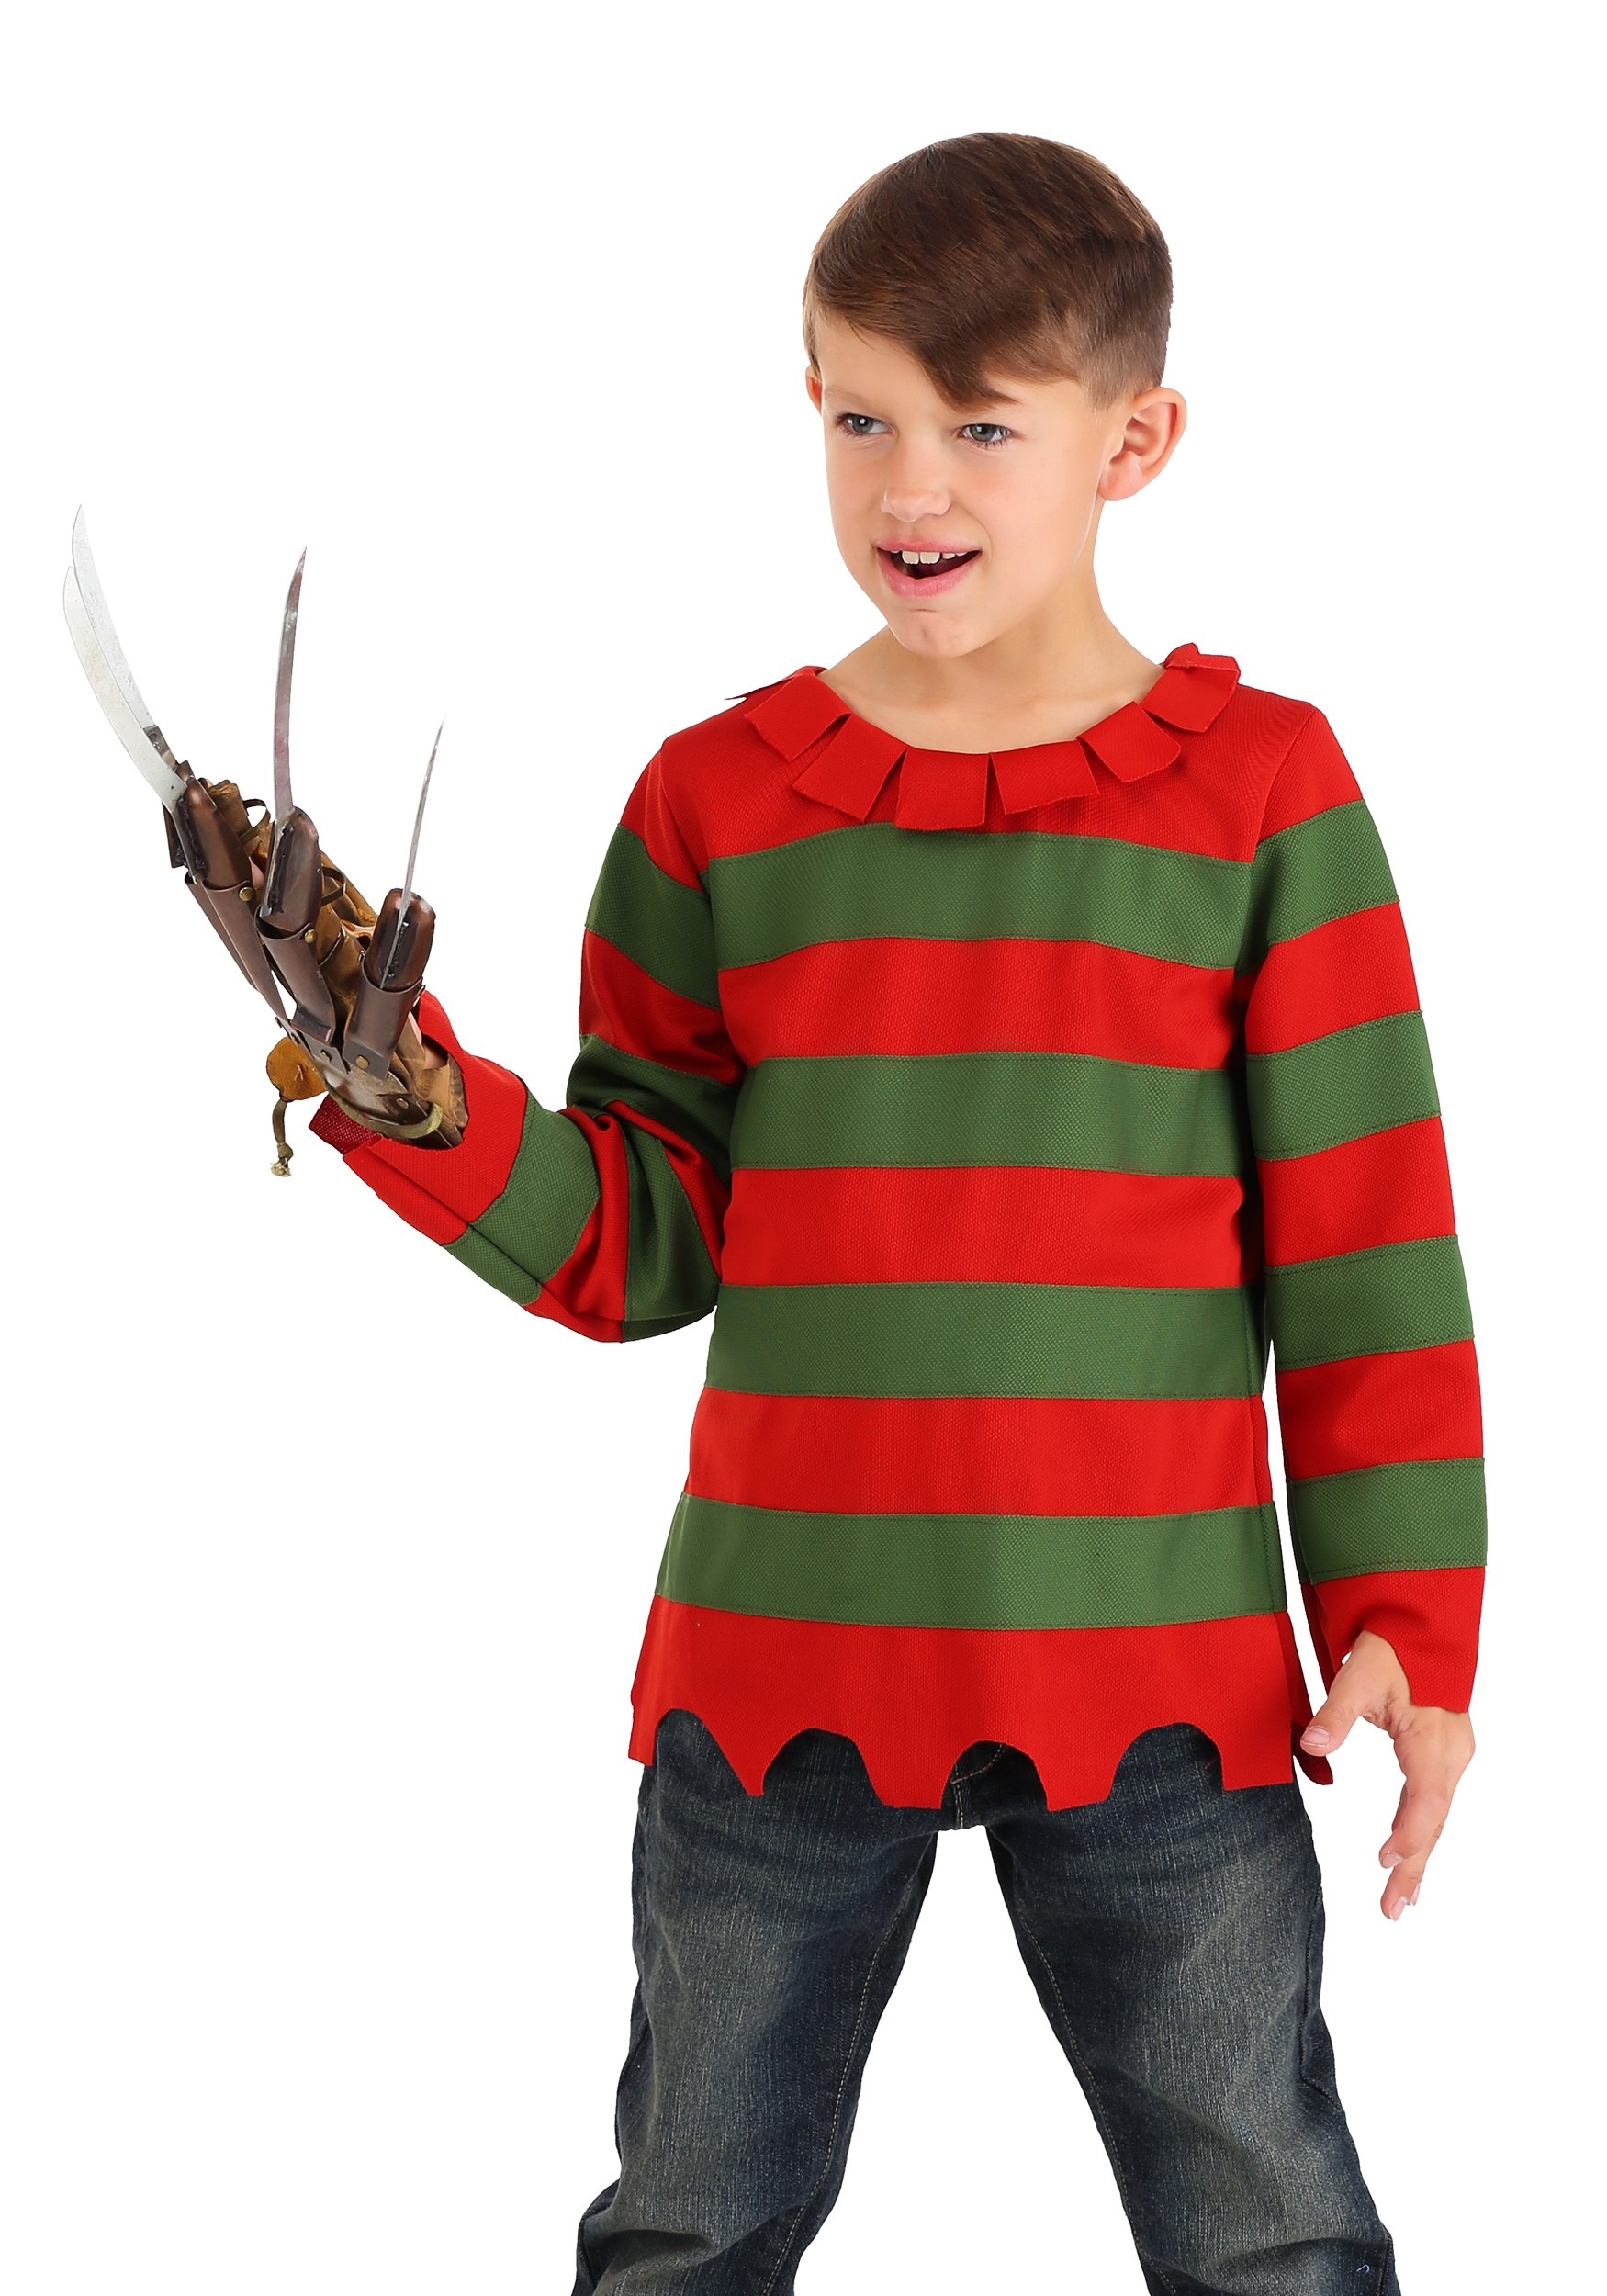 freddy krueger costume for kids